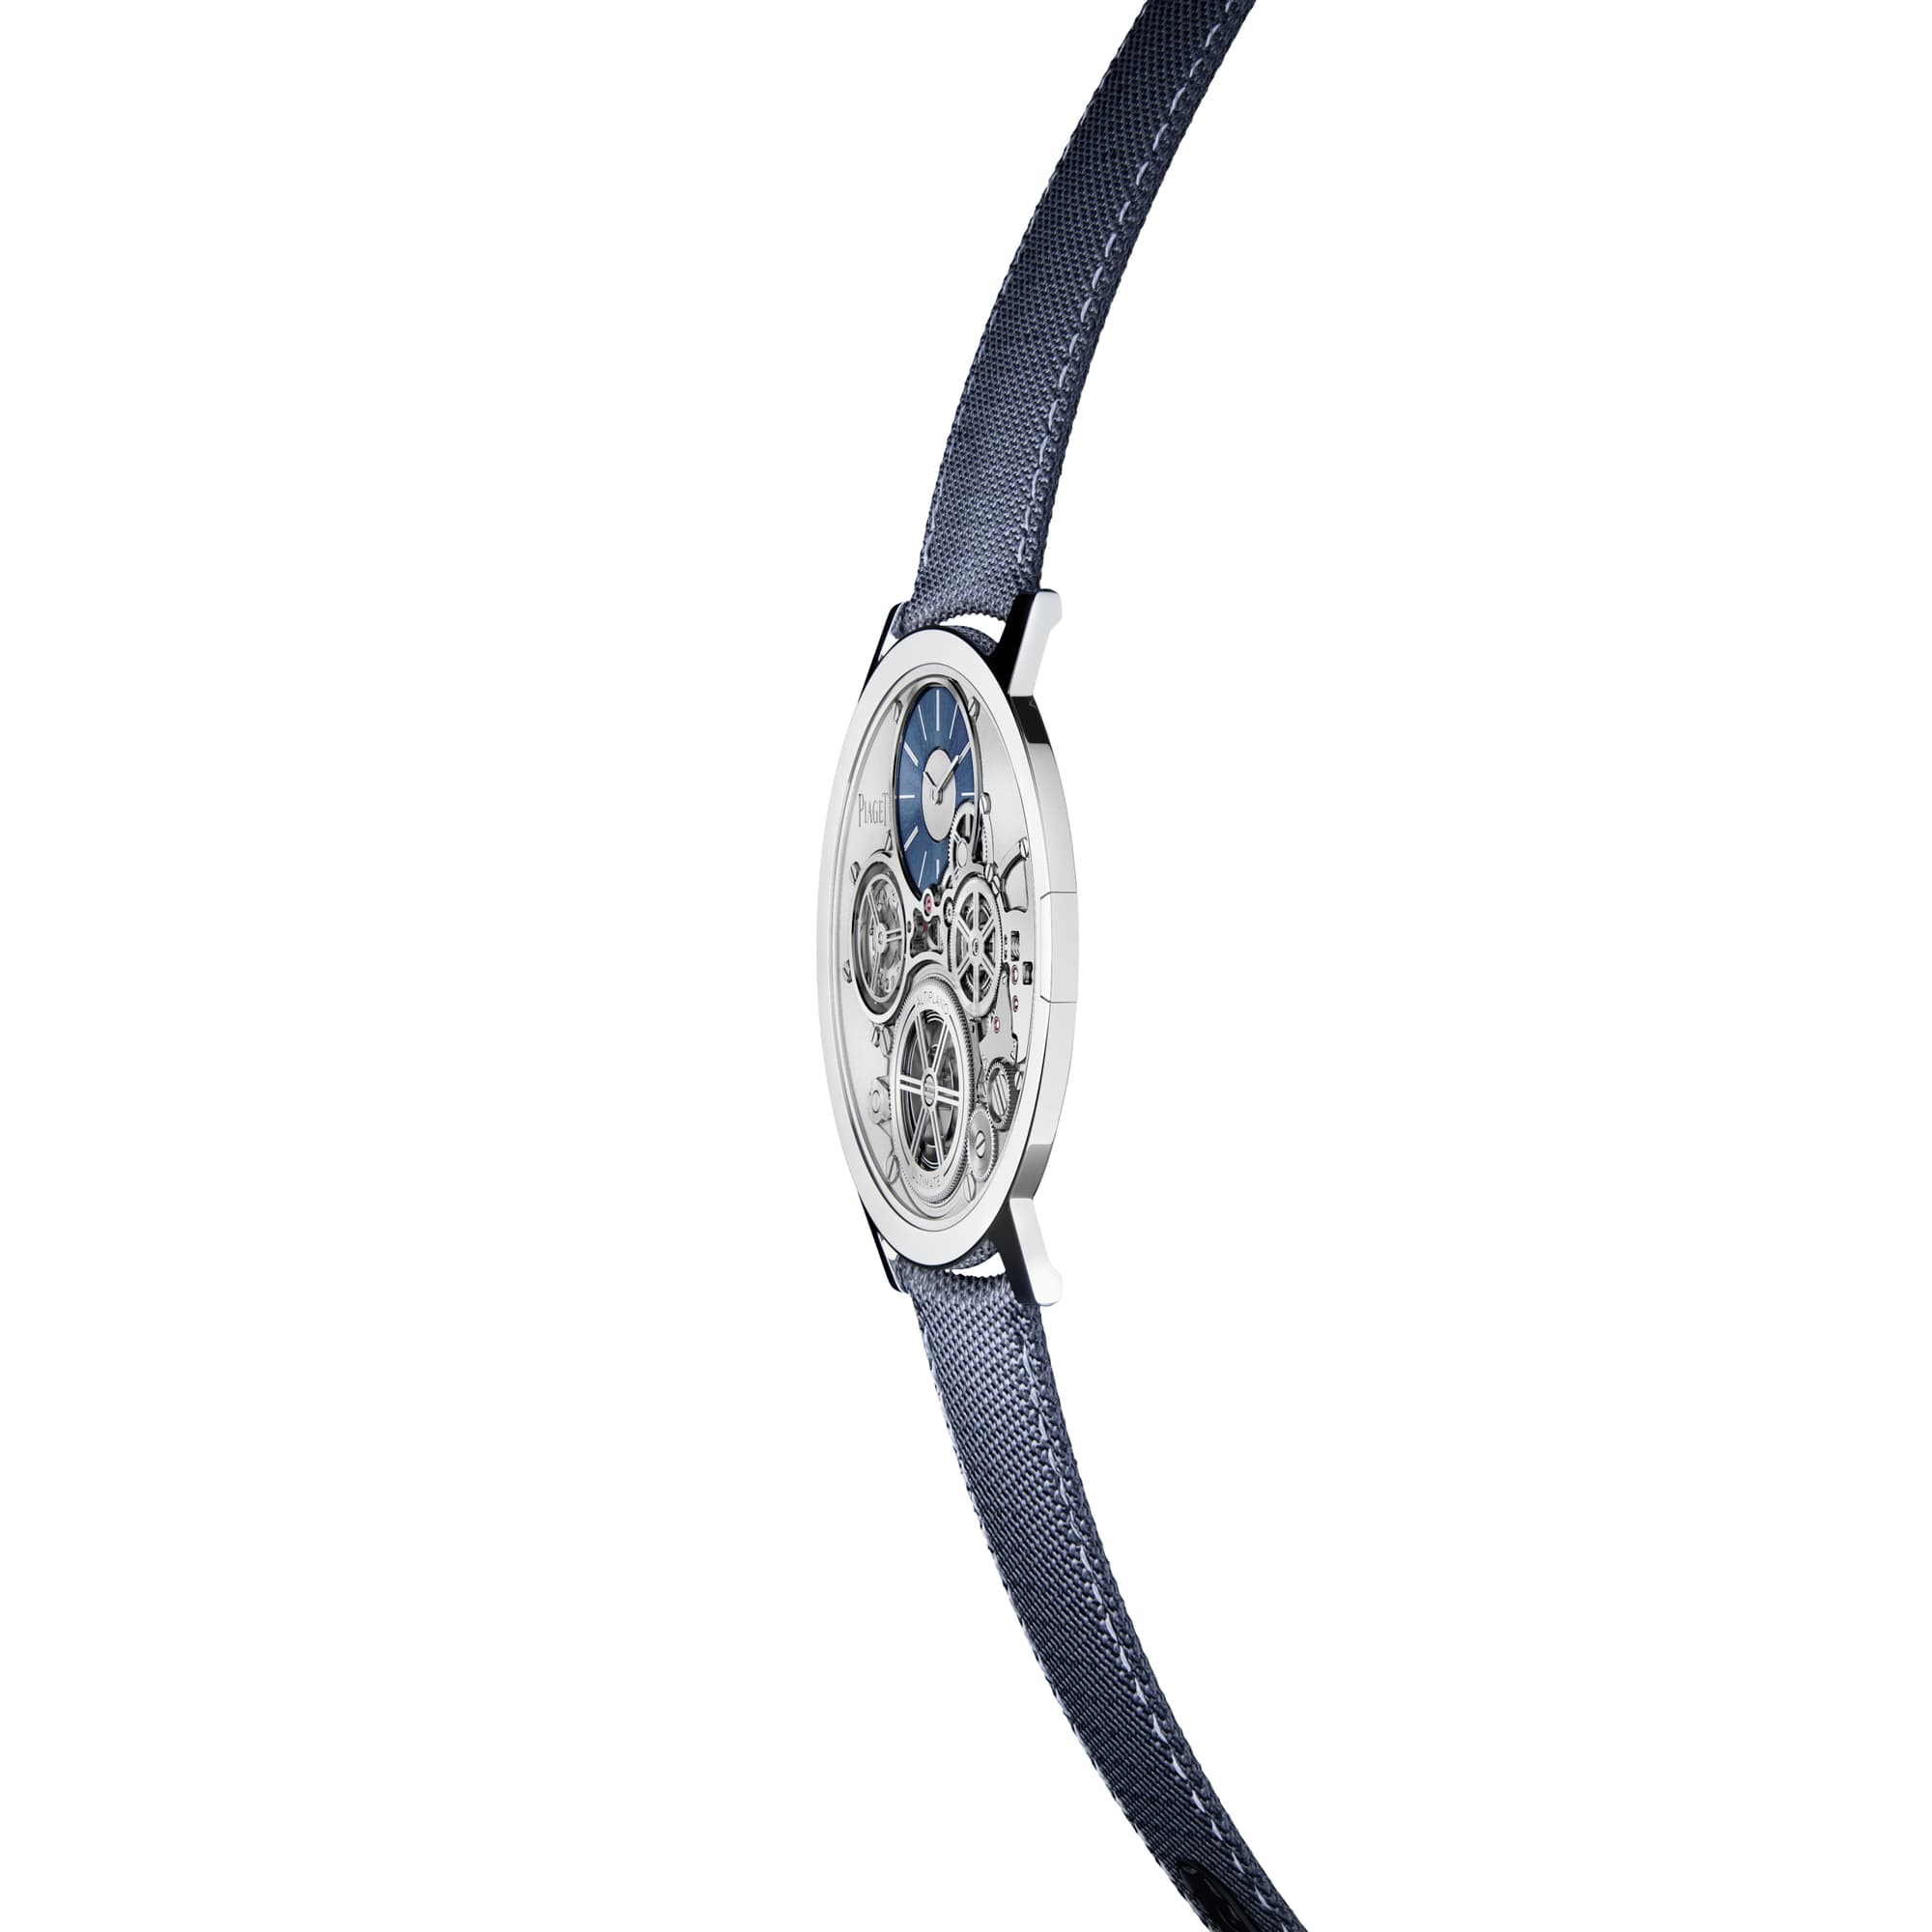 Cobalt Alloy Mechanical Ultra-Thin Watch - Piaget Men Luxury Watch G0A45501